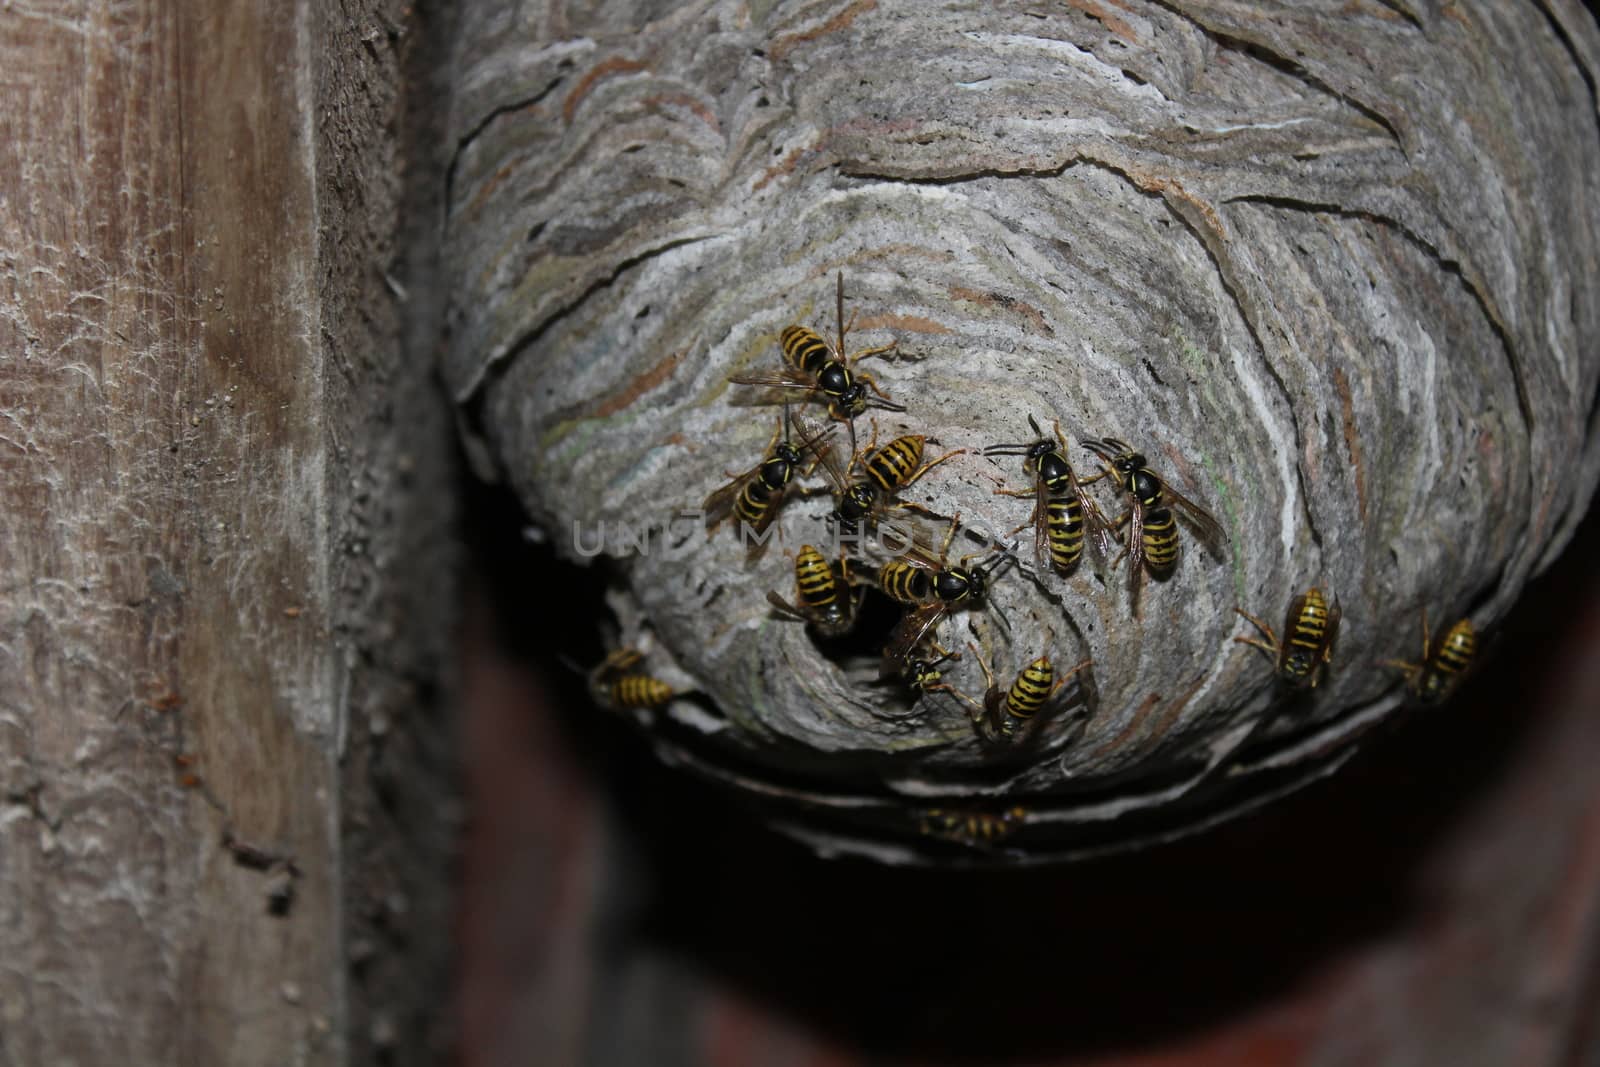 wasps nest and wasps by martina_unbehauen